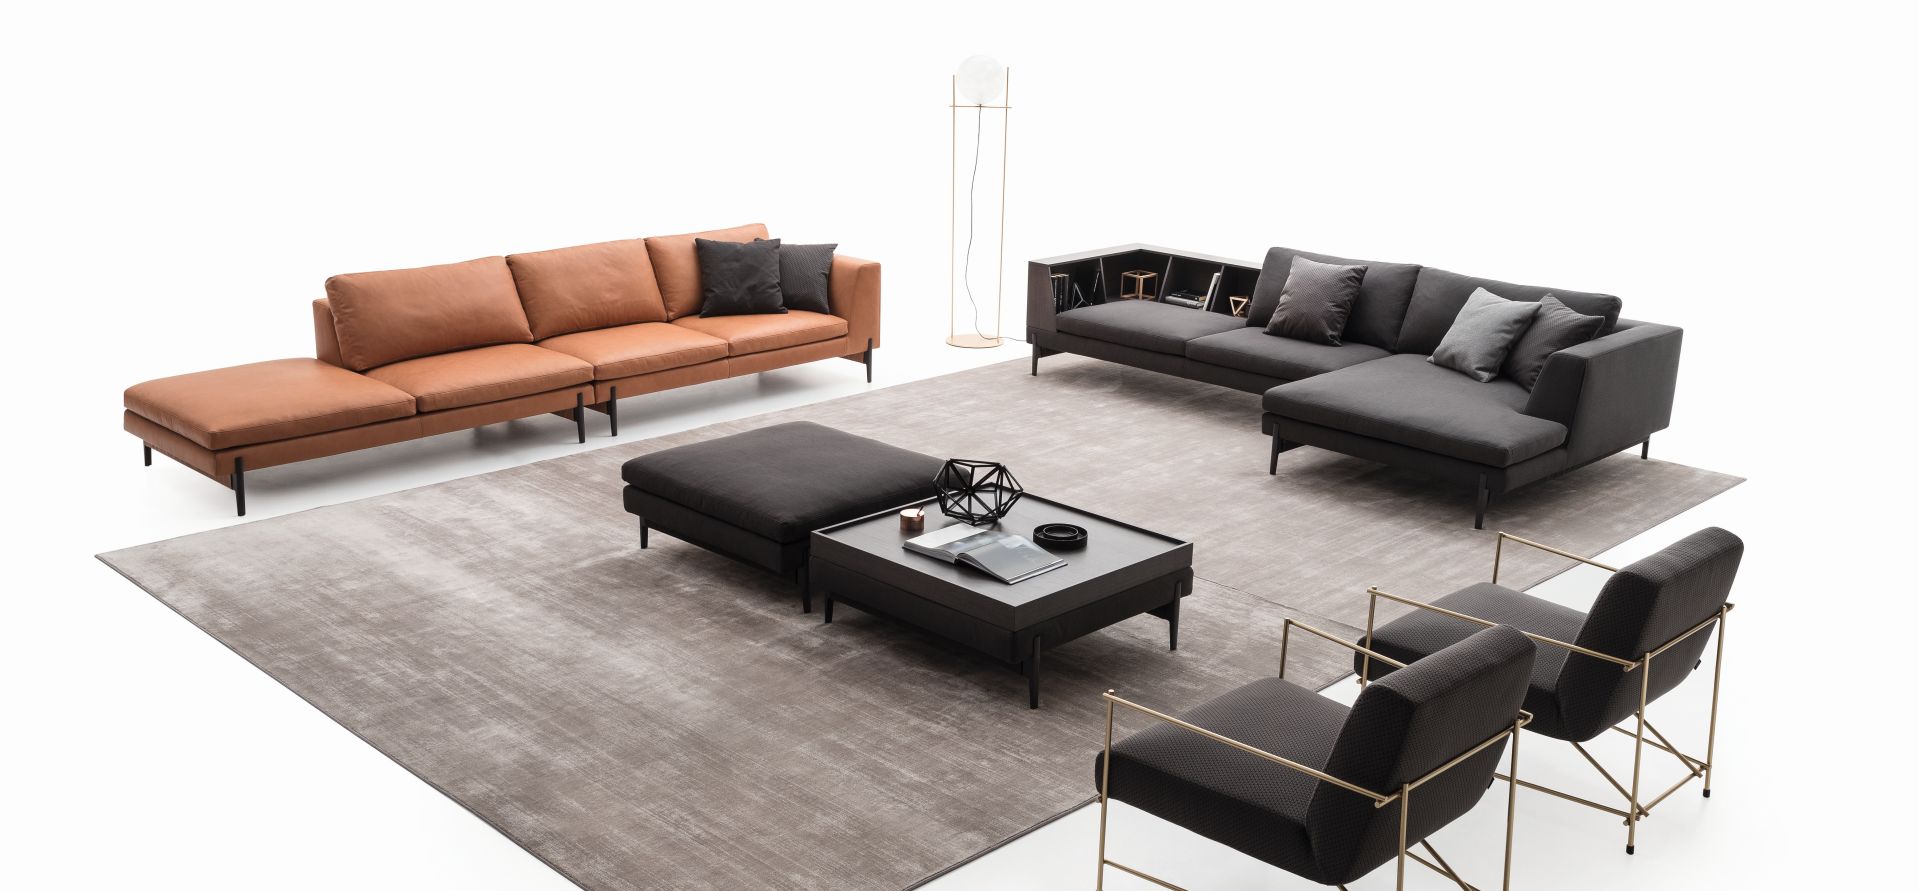 Tienda Online De Home Style,Bedroom Ceramic Floor Tiles Design